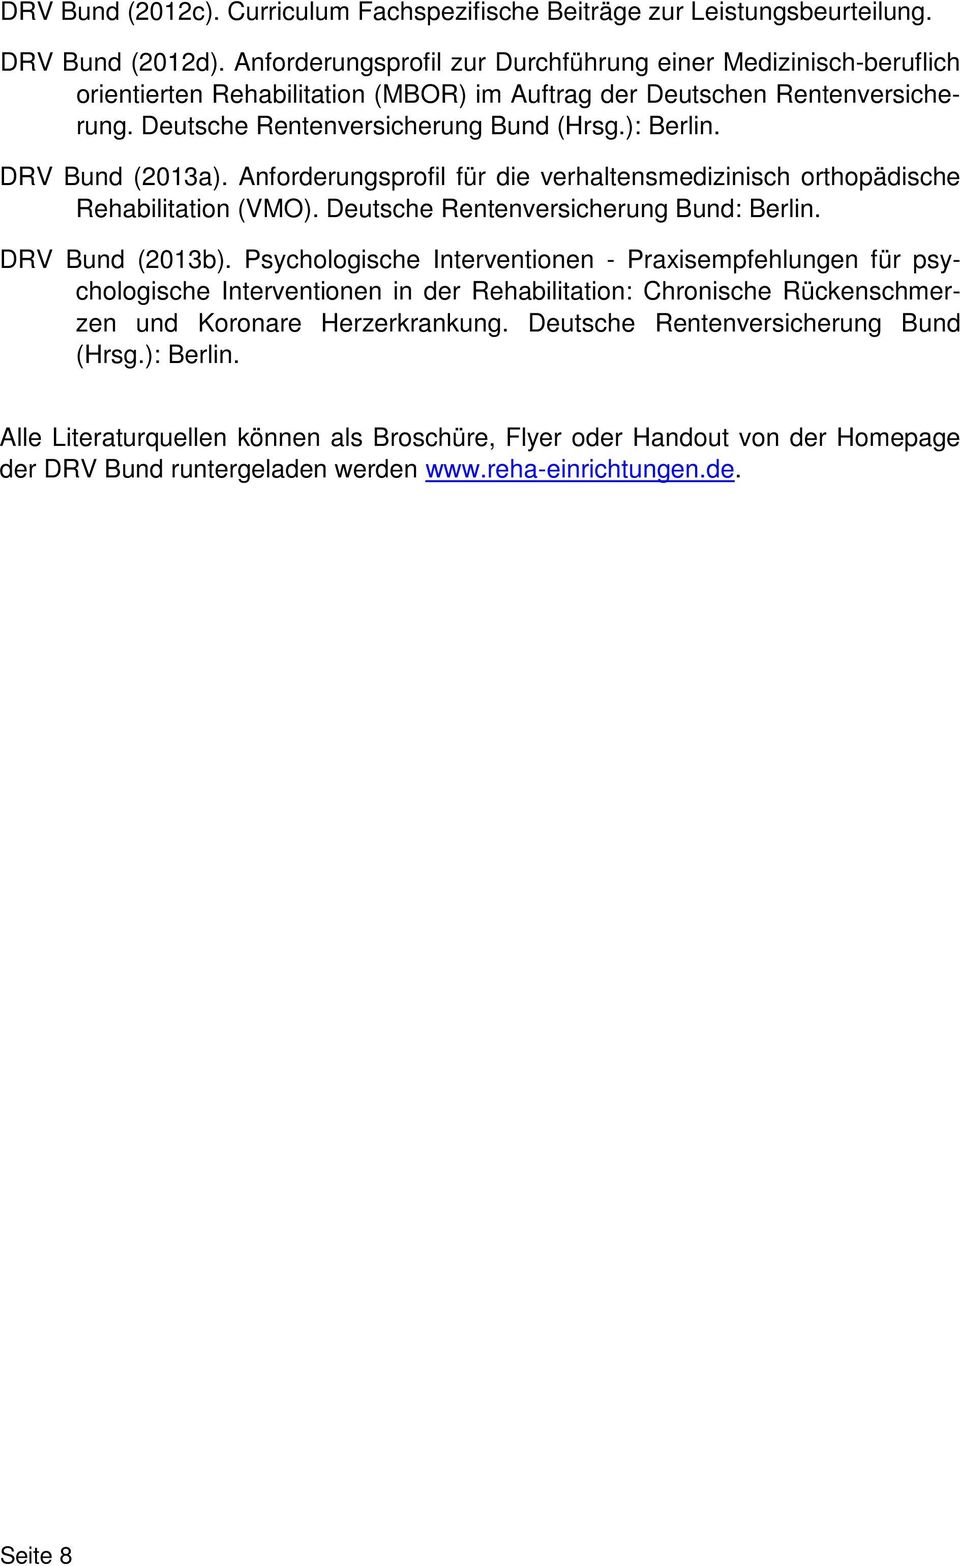 DRV Bund (2013a). Anforderungsprofil für die verhaltensmedizinisch orthopädische Rehabilitation (VMO). Deutsche Rentenversicherung Bund: Berlin. DRV Bund (2013b).